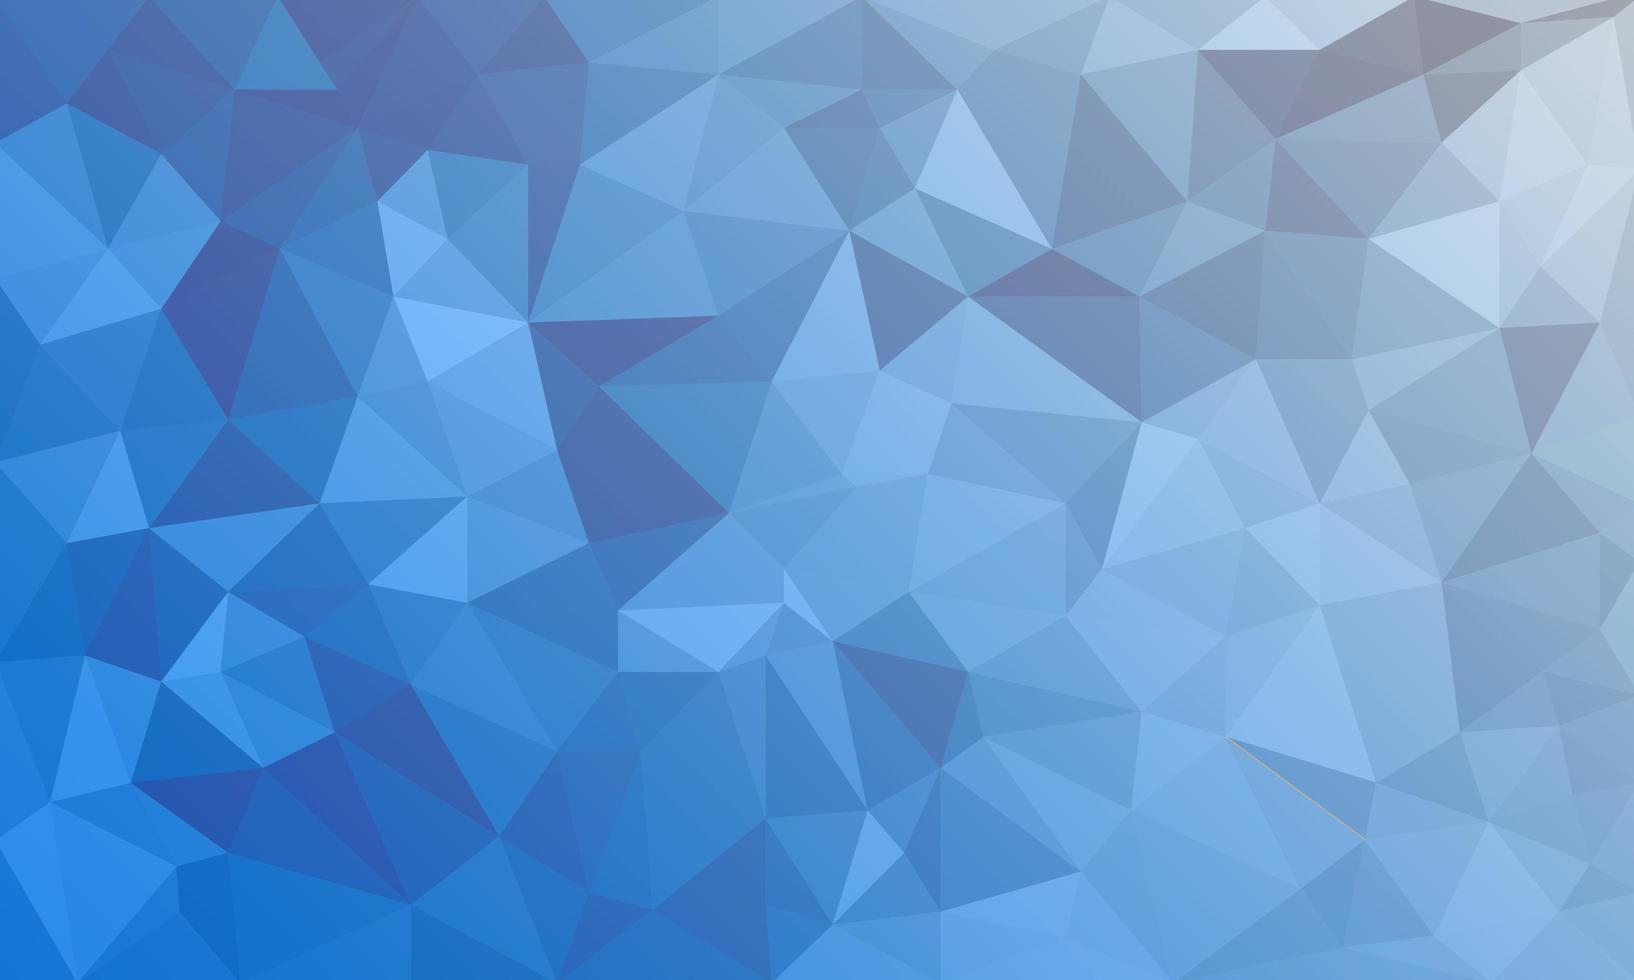 abstrakter blauer Hintergrund, Low-Poly-strukturierte Dreiecksformen in zufälligem Muster, trendiger Lowpoly-Hintergrund vektor